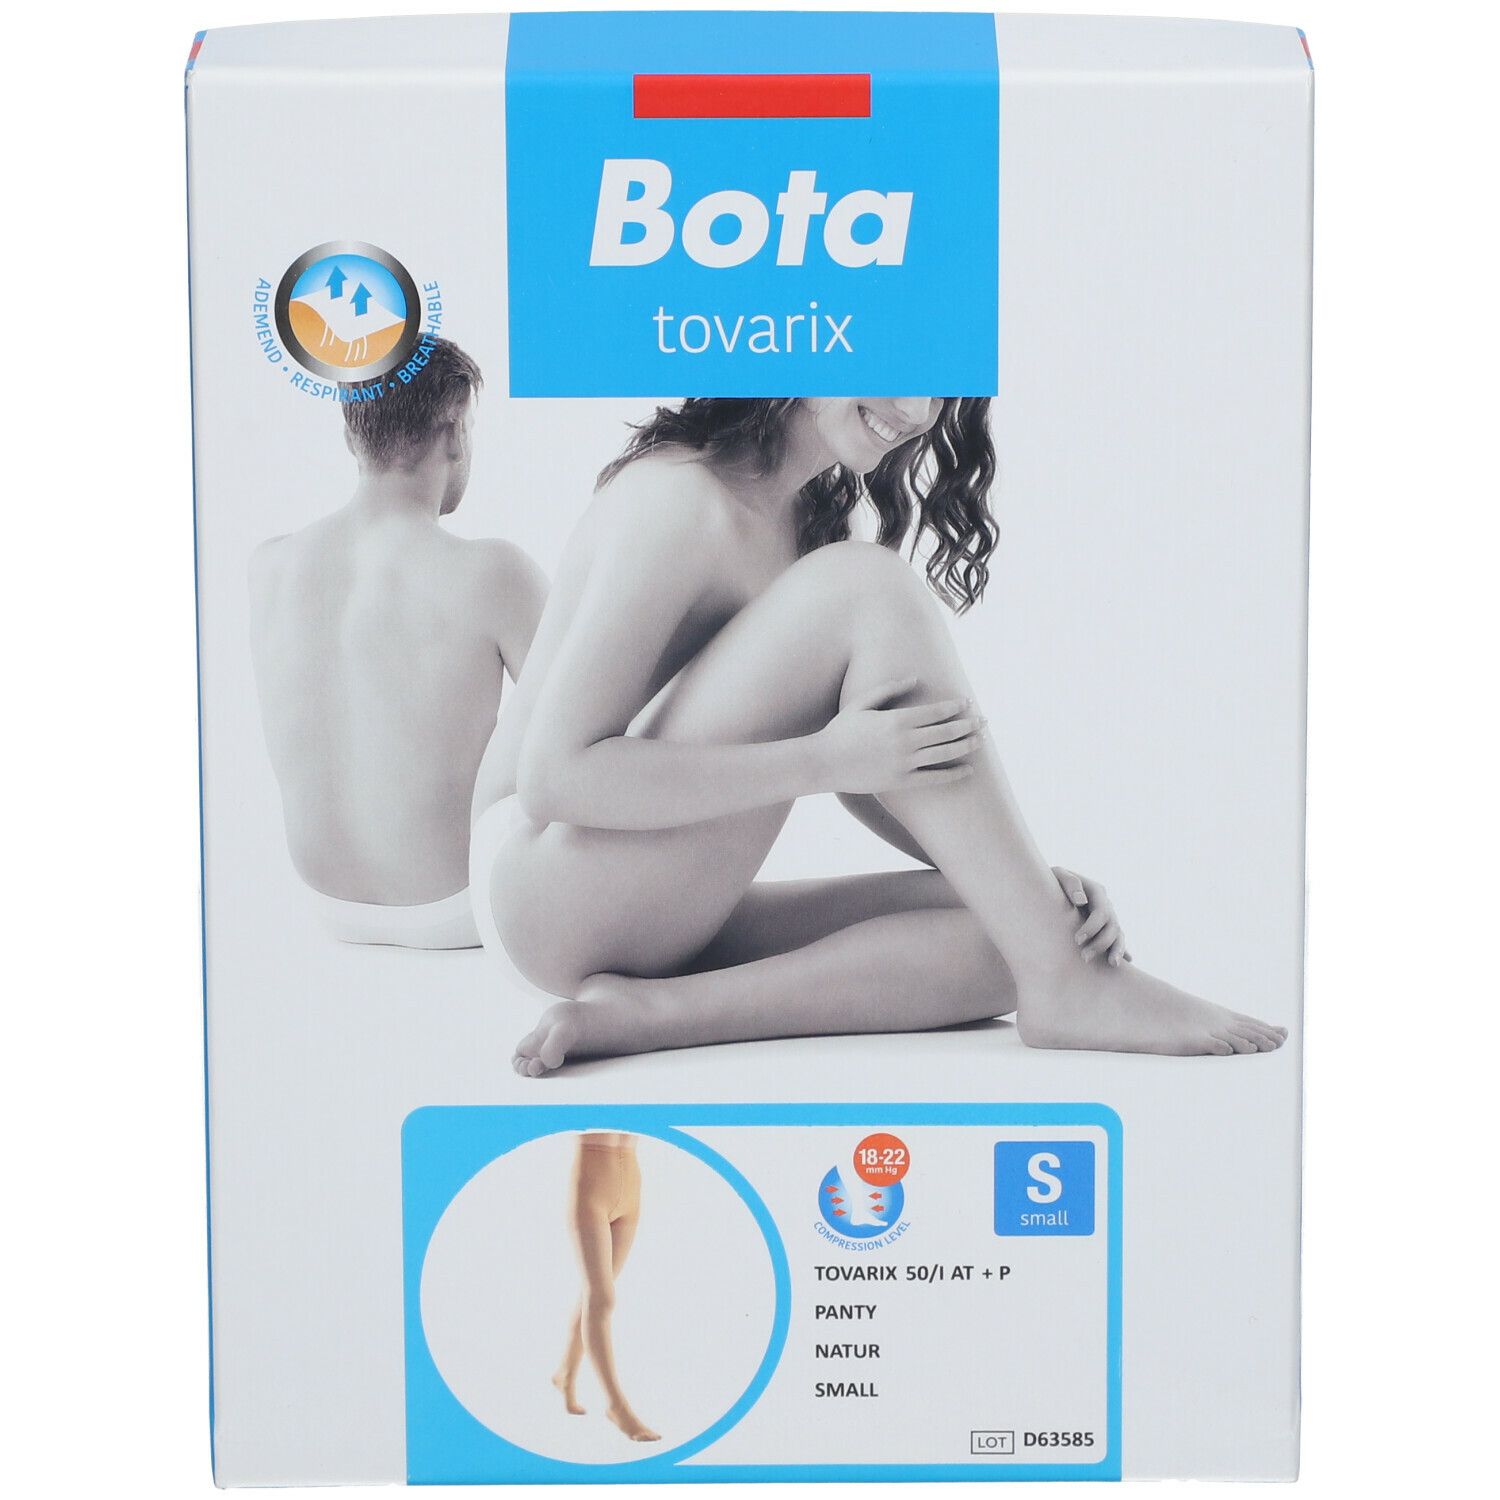 Bota Tovarix 50/I Panty AT +P Natur Small